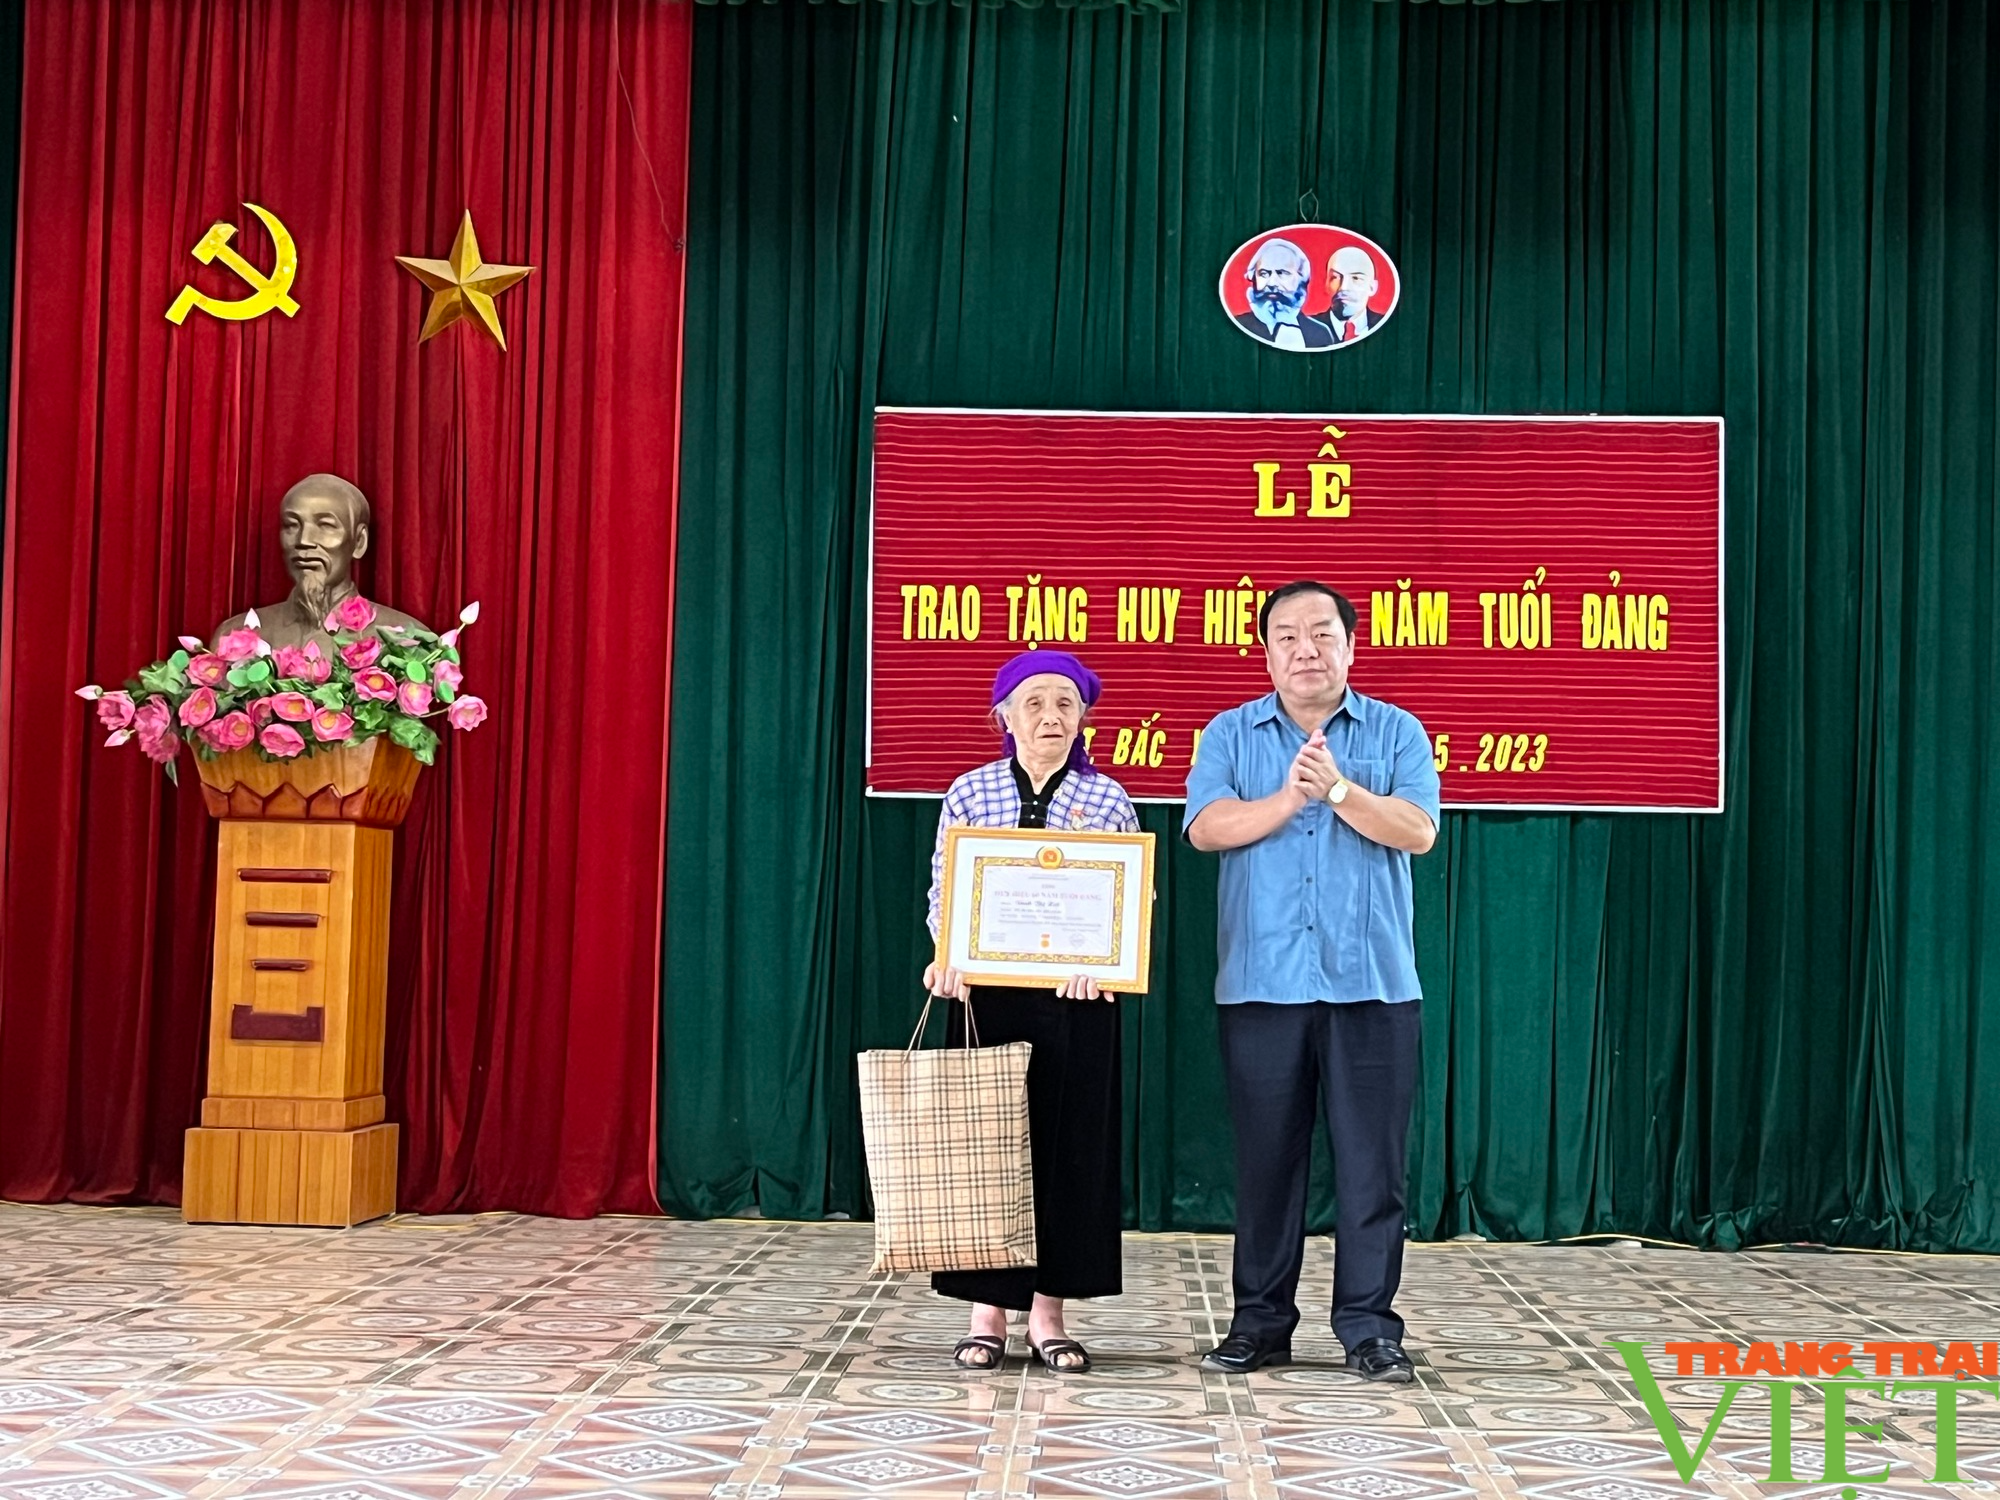 Phó Chủ tịch HĐND tỉnh Sơn La trao huy hiệu 60 năm tuổi đảng tại Bắc Yên - Ảnh 2.